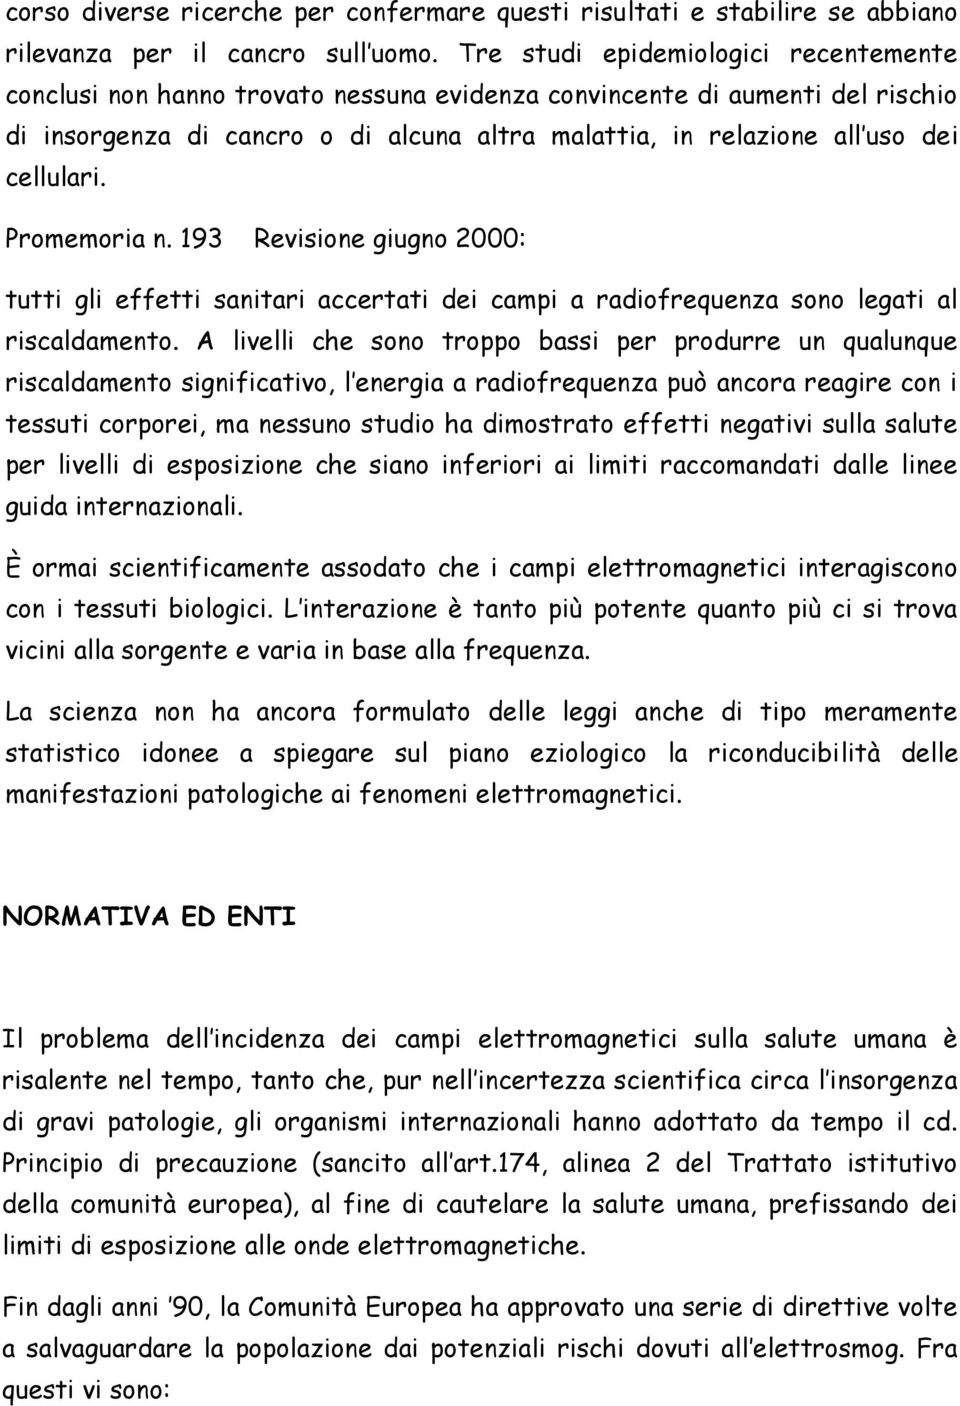 cellulari. Promemoria n. 193 Revisione giugno 2000: tutti gli effetti sanitari accertati dei campi a radiofrequenza sono legati al riscaldamento.